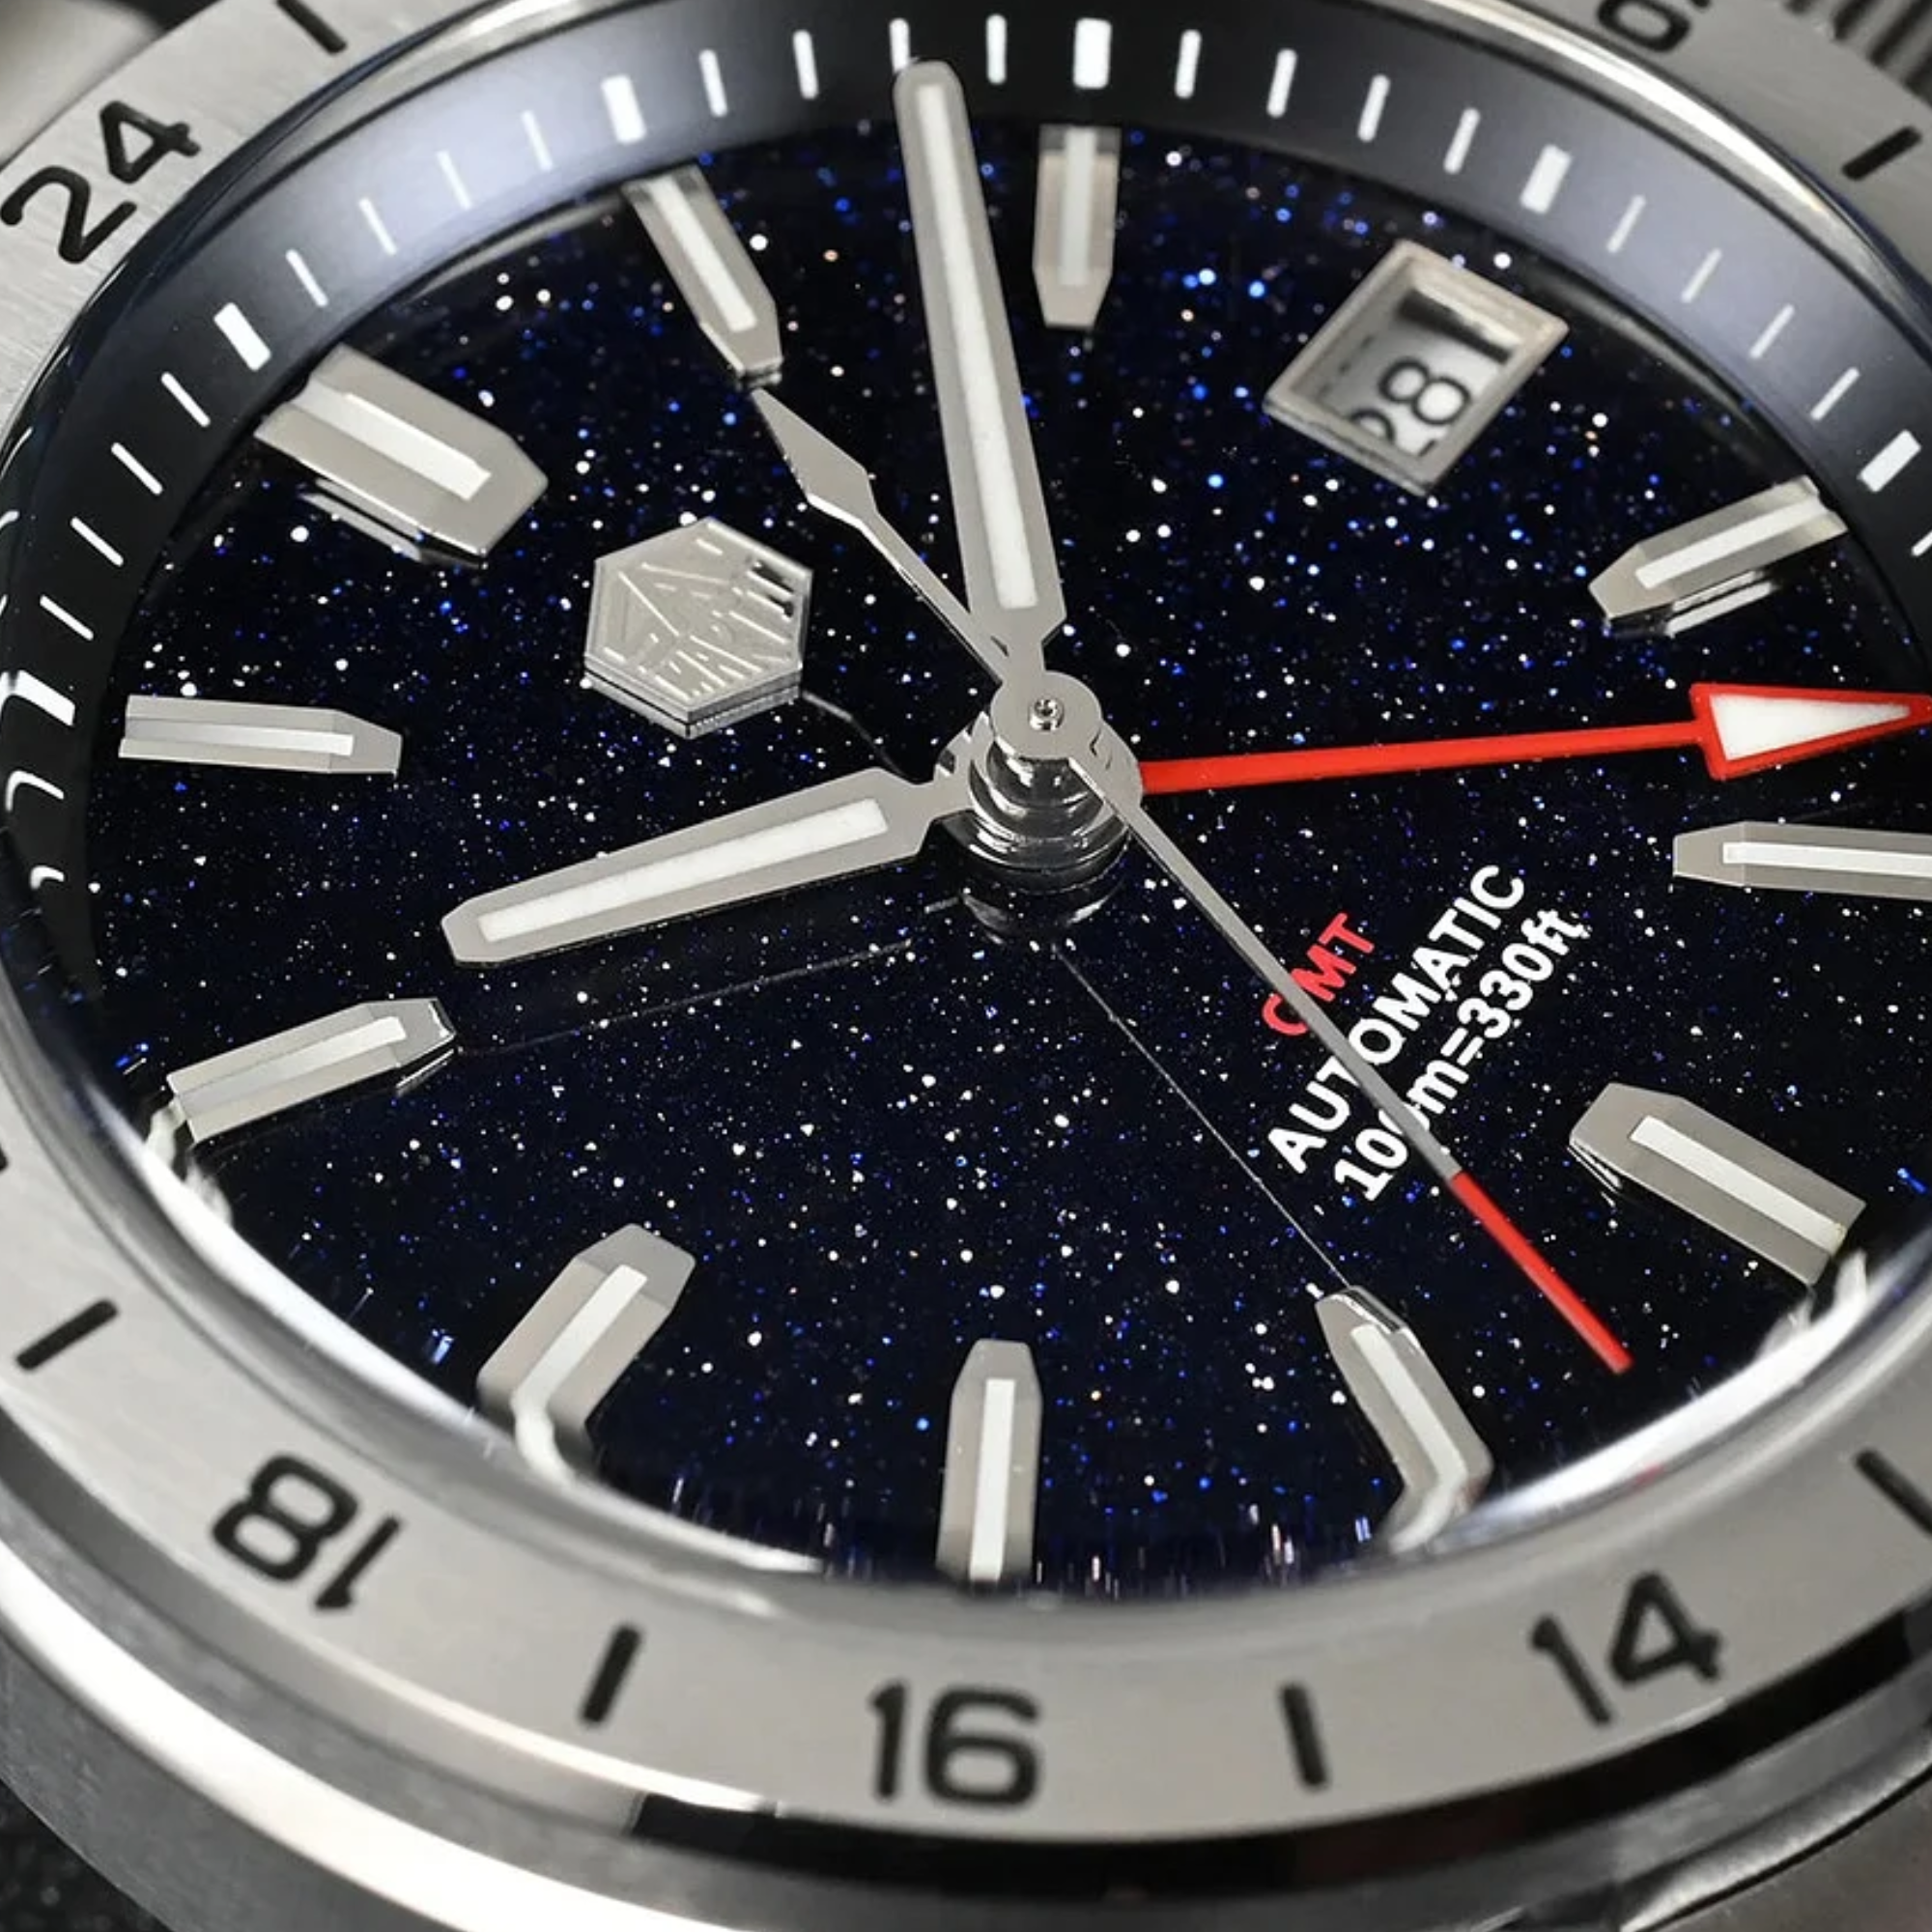 San Martin Aventurine Gemstone NH34 GMT Watch SN0129GB - Black Aventurine